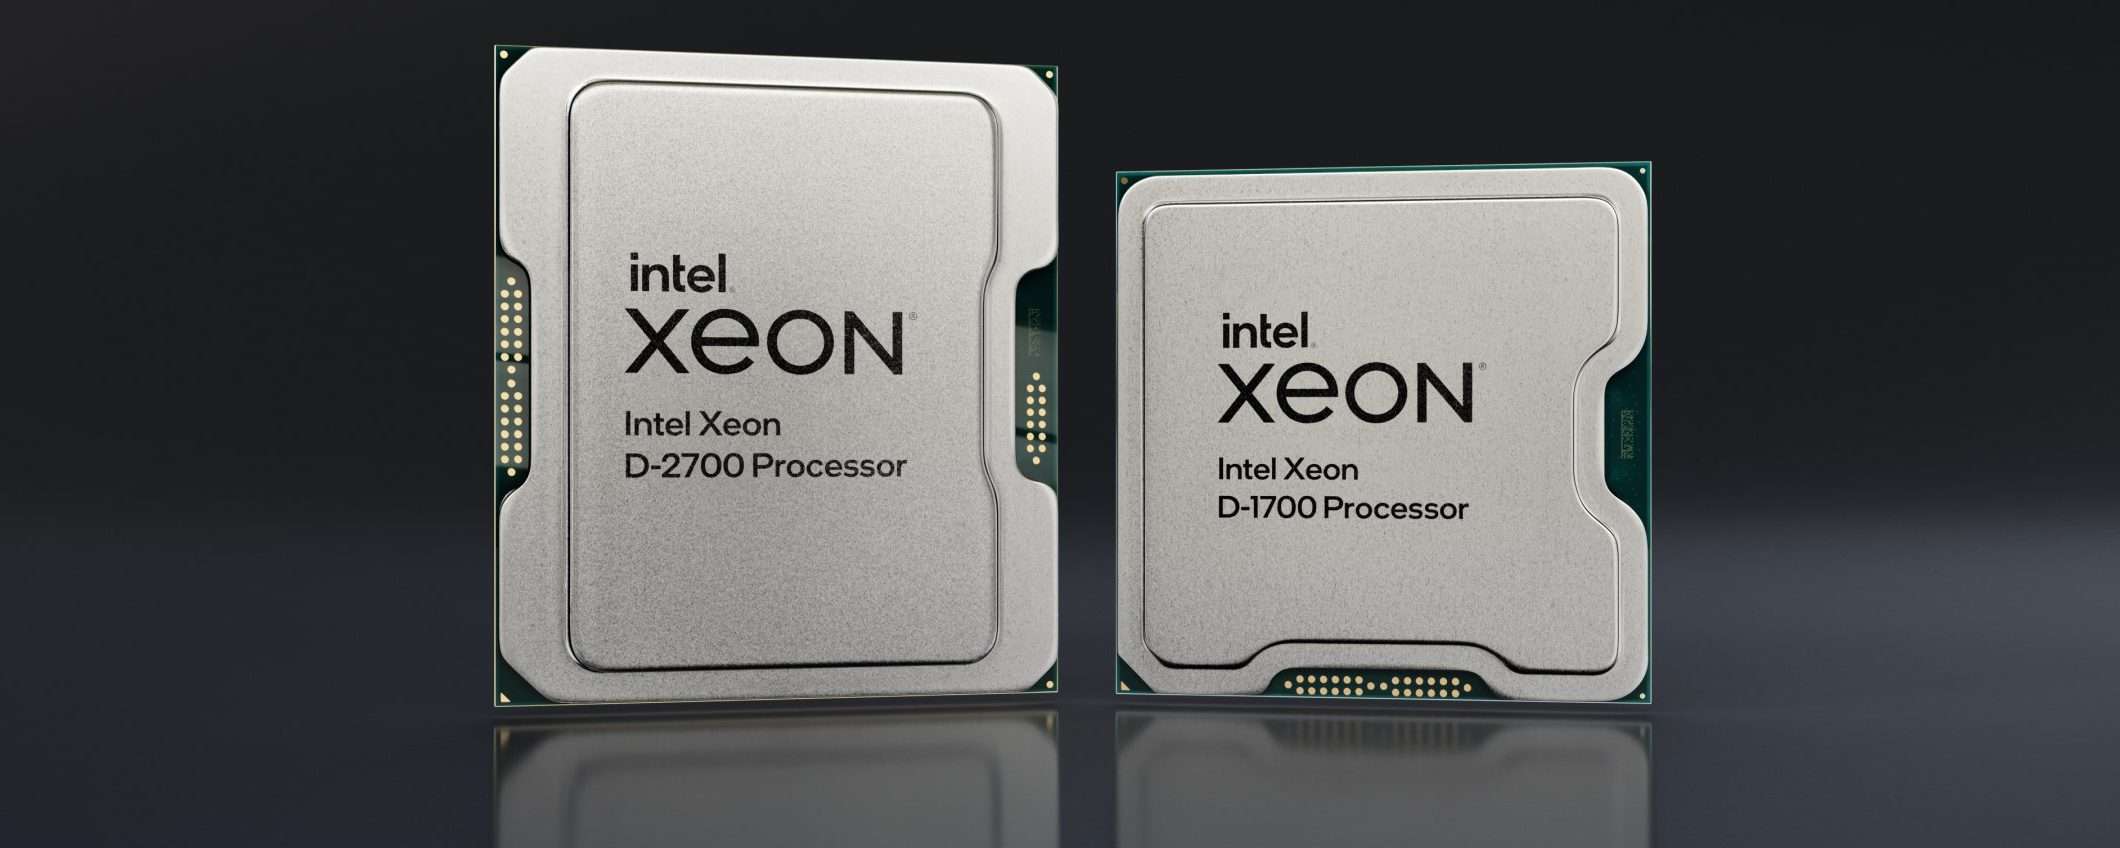 Intel: benchmark SPEC annullati, prove falsate sulle CPU Xeon